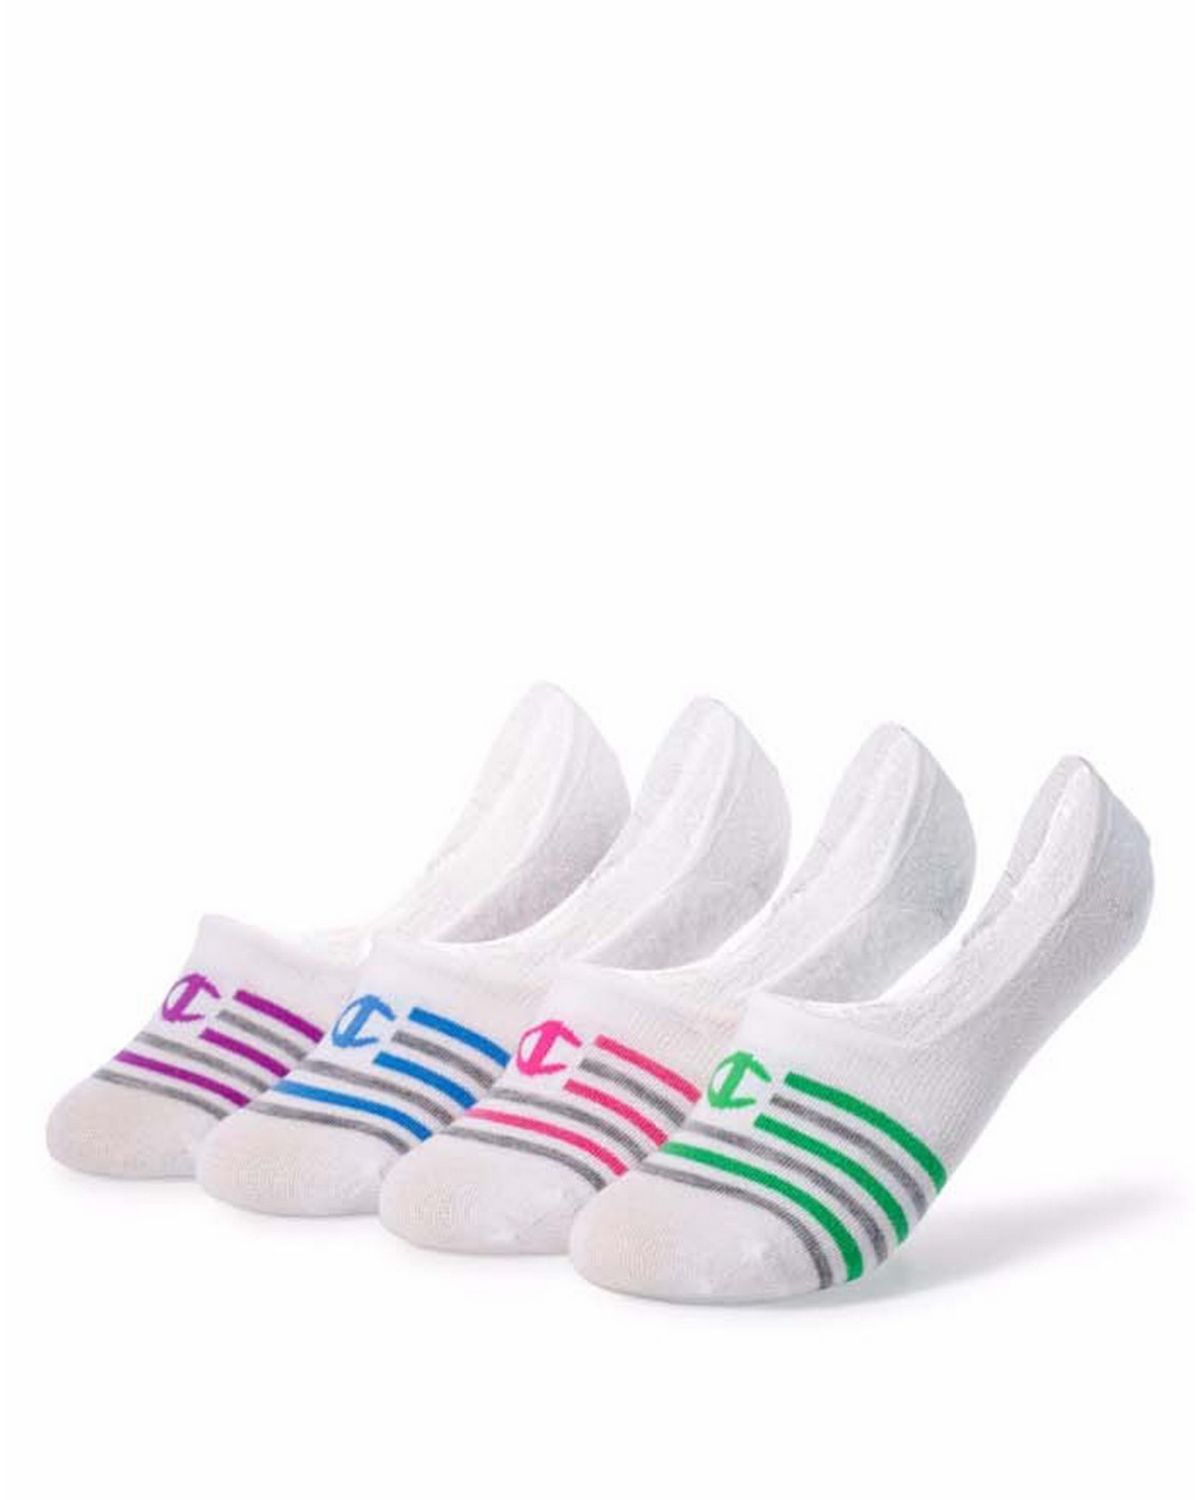 Performance Liner Stripe Socks 4-Pack